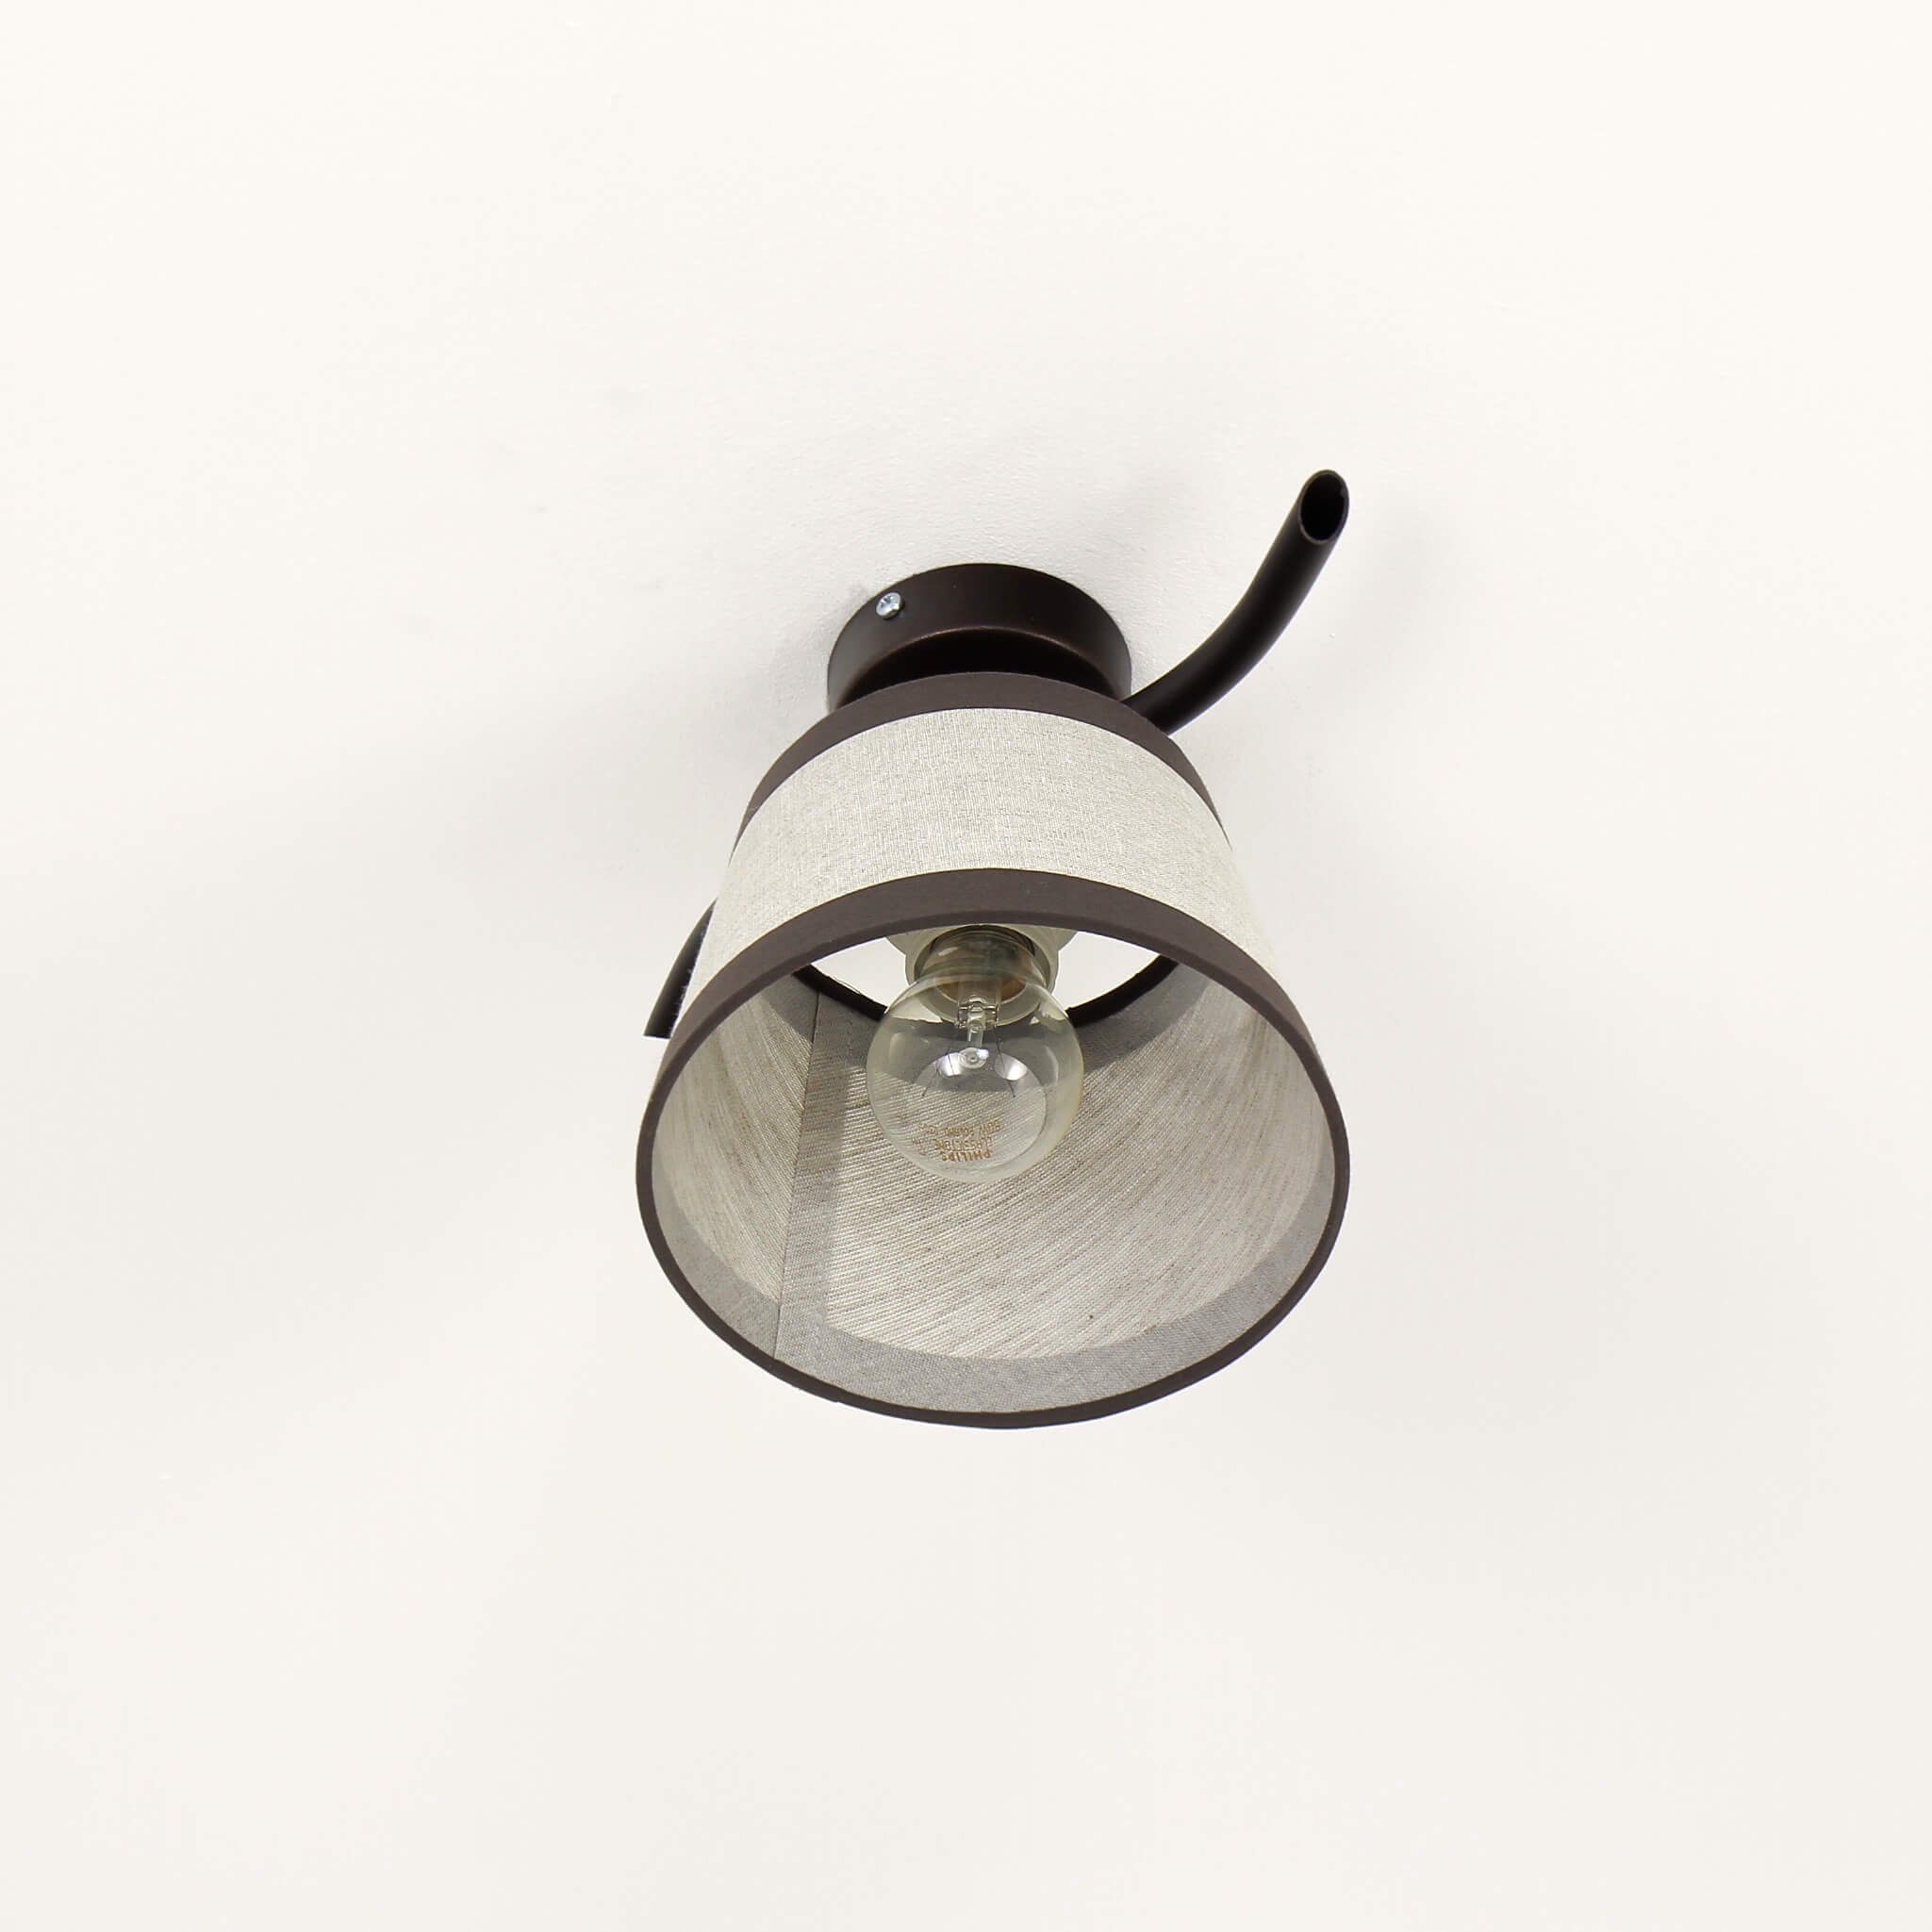 Creme E27 Licht-Erlebnisse Stoffschirm Deckenleuchte Braun NIKI, Rustikal Deckenlampe Leuchtmittel, ohne